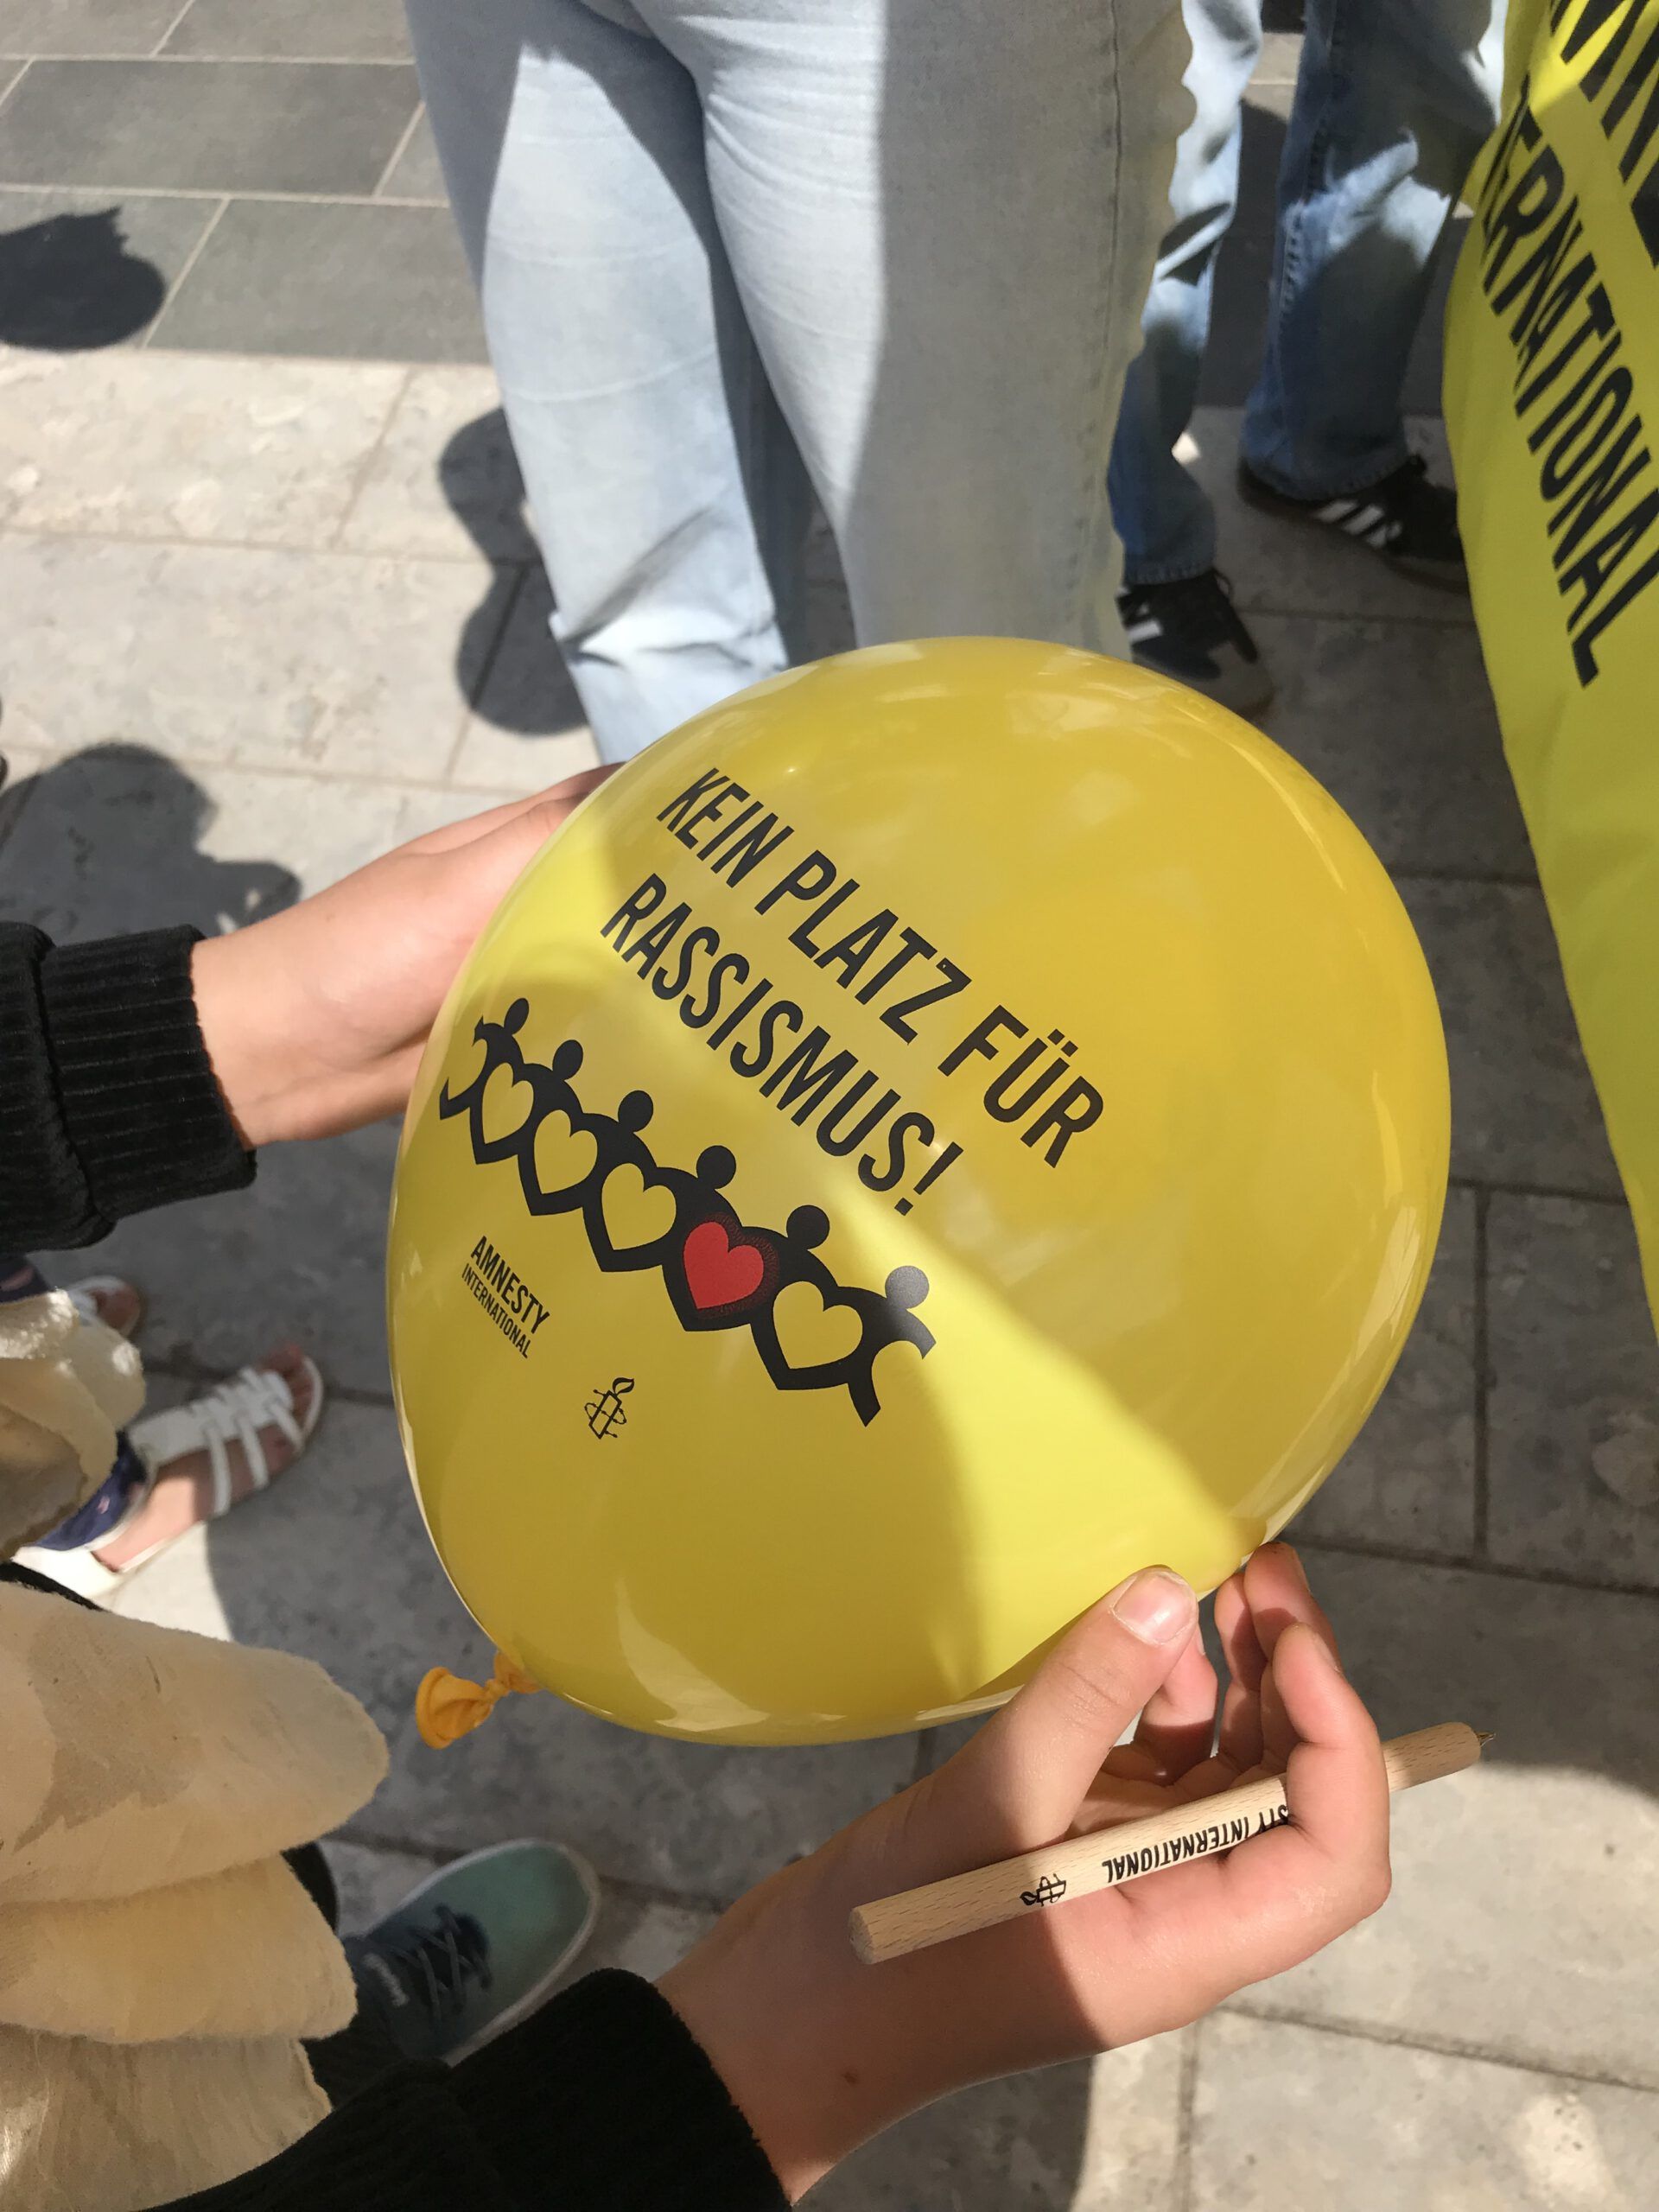 Ein gelber Luftballon auf dem "Kein Platz für Rassismus" geschrieben steht.